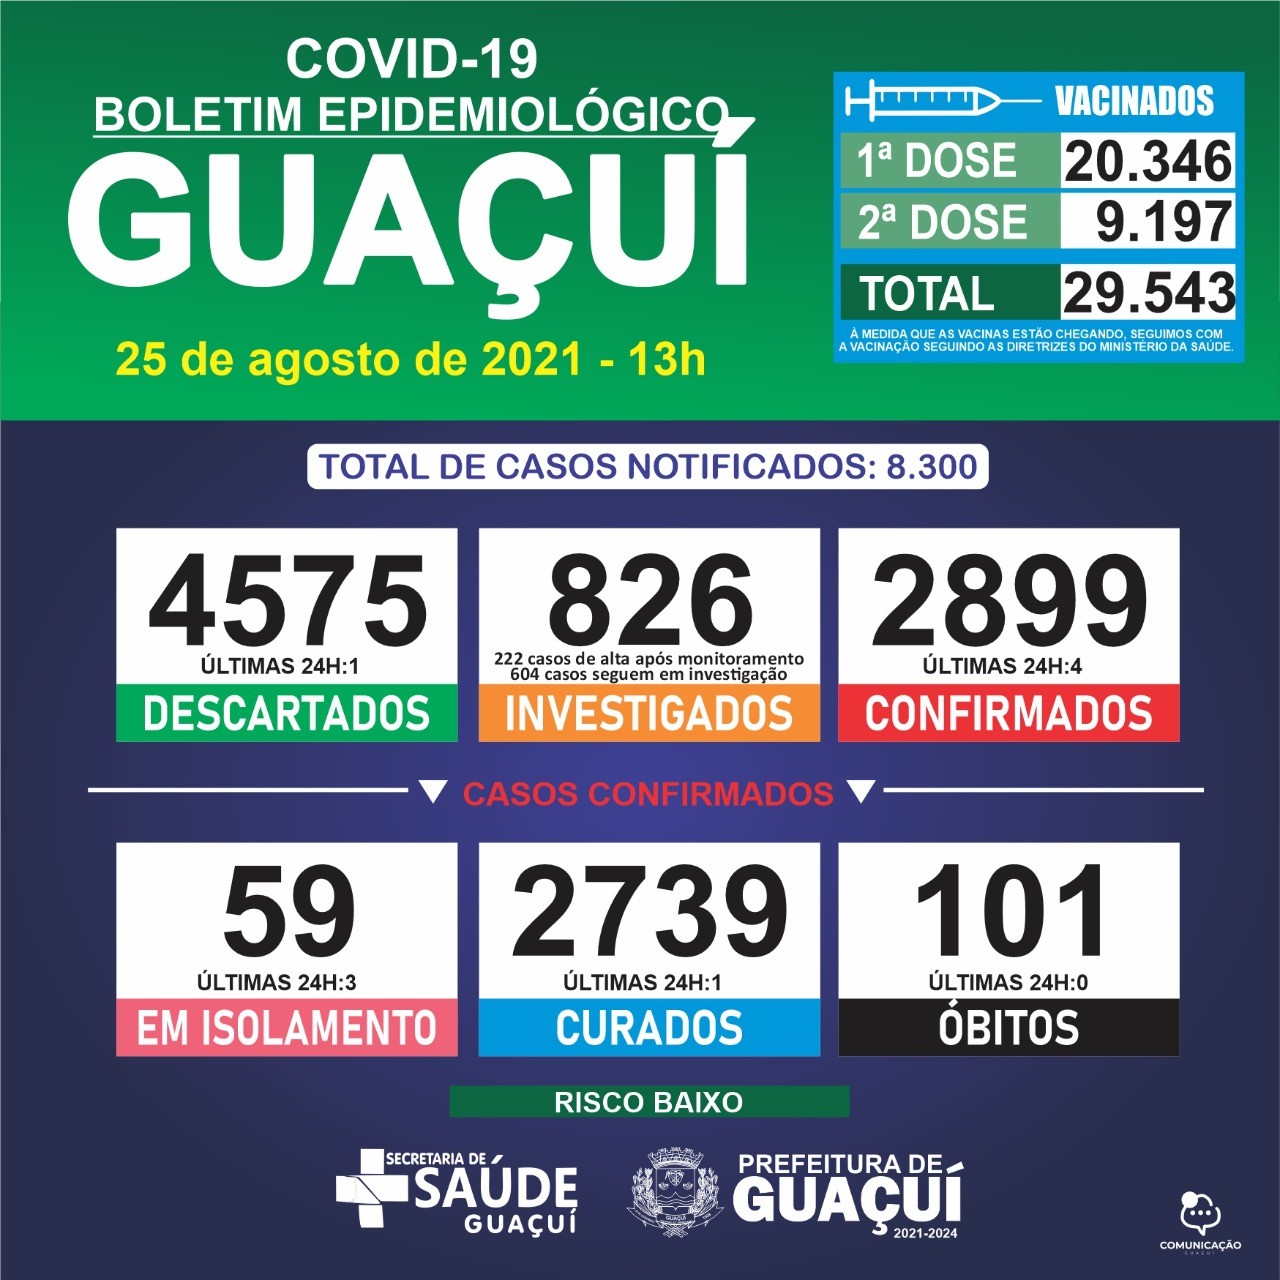 Boletim Epidemiológico 25/08/21: Guaçuí registra 4 casos confirmados e 1 curado nas últimas 24 horas